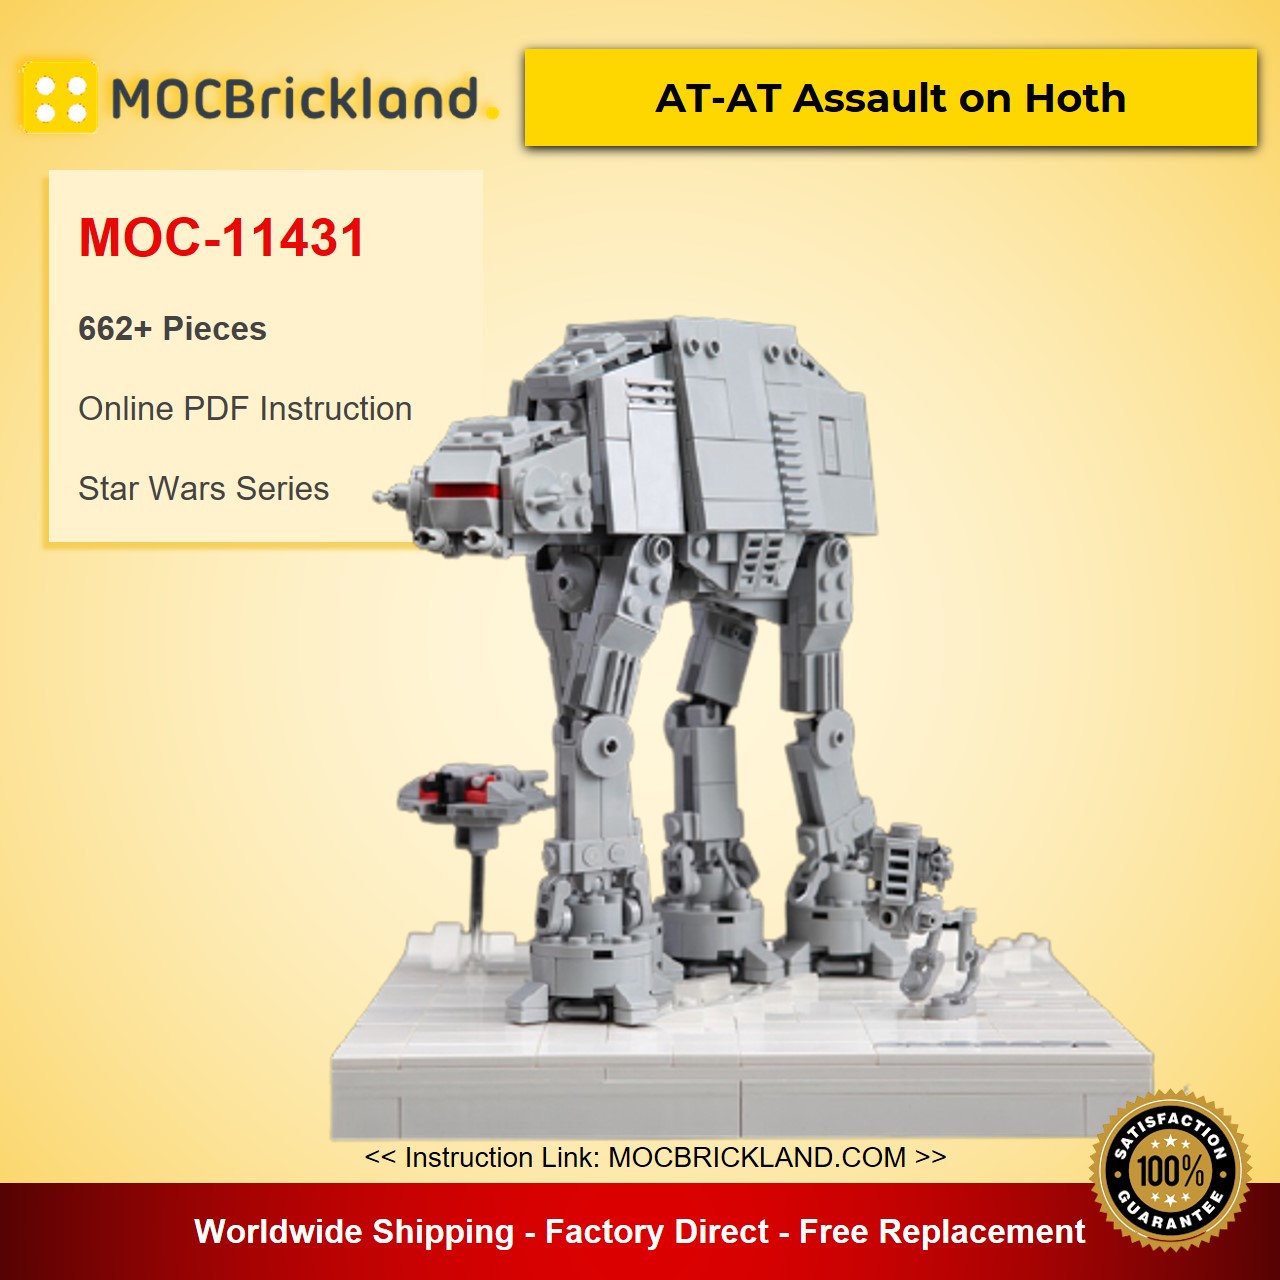 MOCBRICKLAND MOC-11431 AT-AT Assault on Hoth